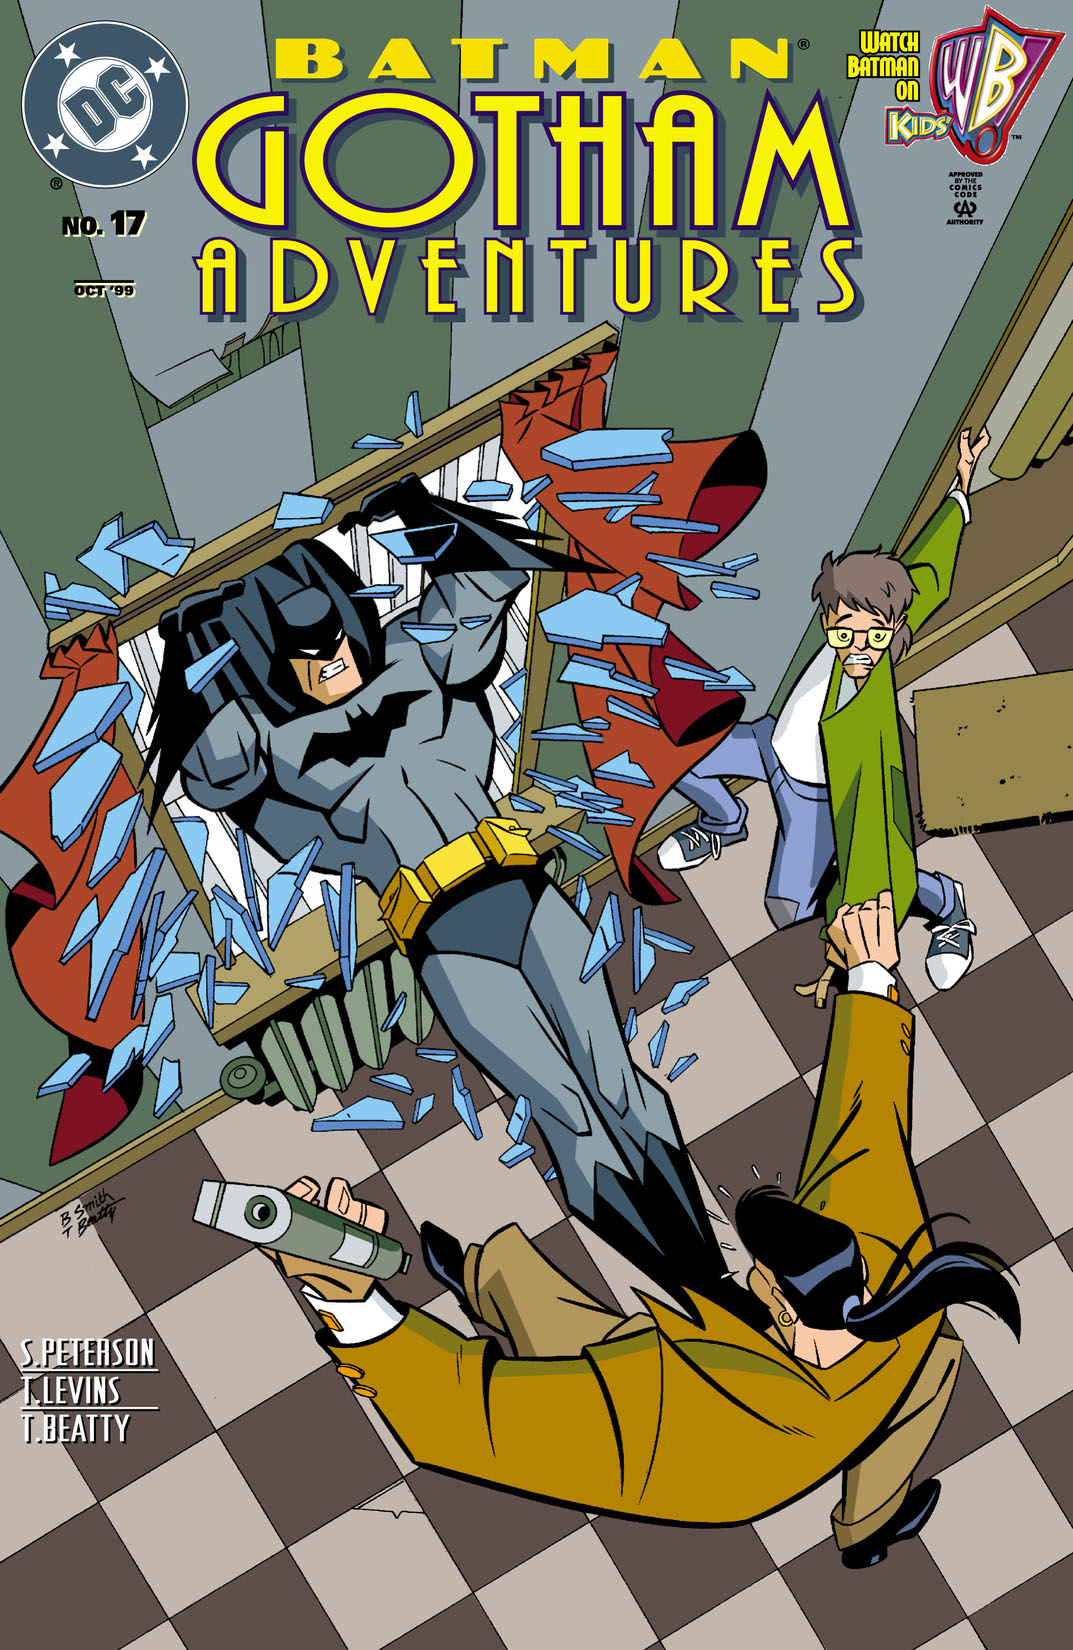 Batman: Gotham Adventures #17 preview images